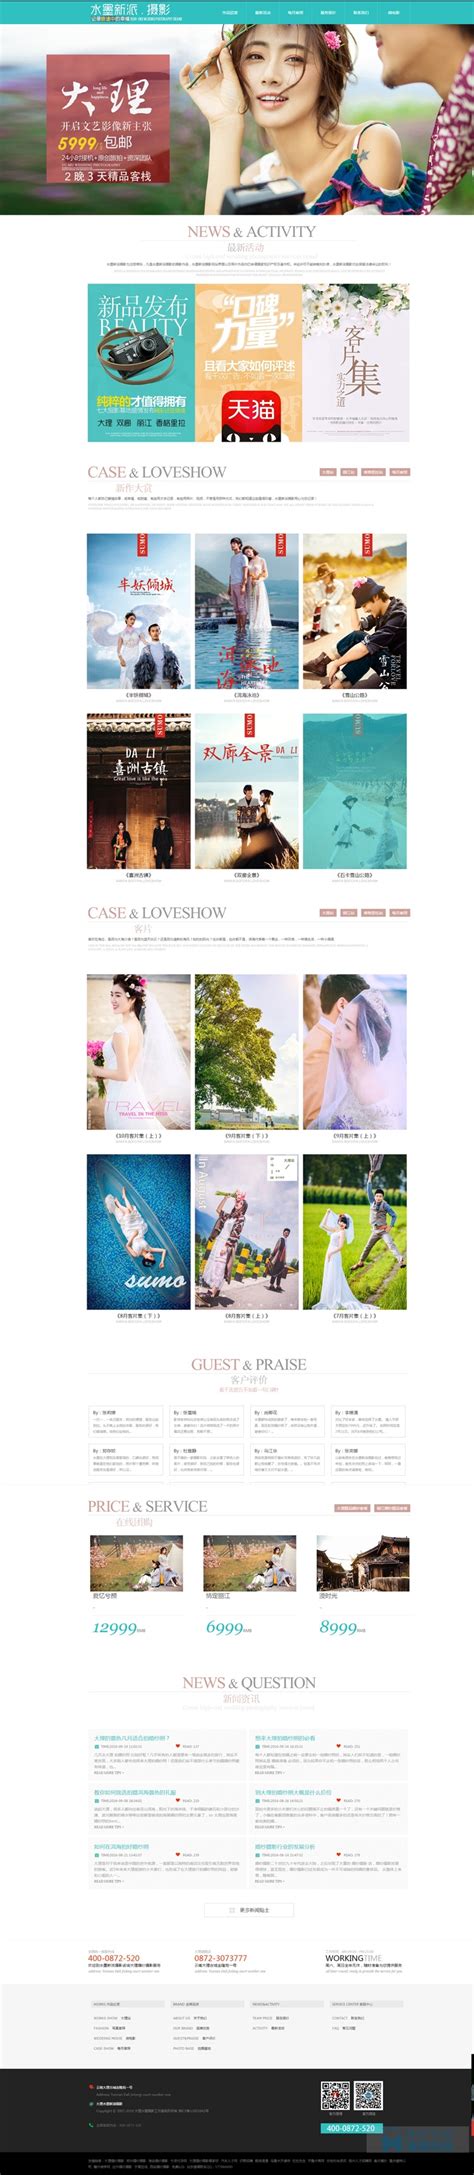 大理婚纱摄影网站建设,婚纱摄影网站设计,上海婚纱摄影类网站建设-海淘科技